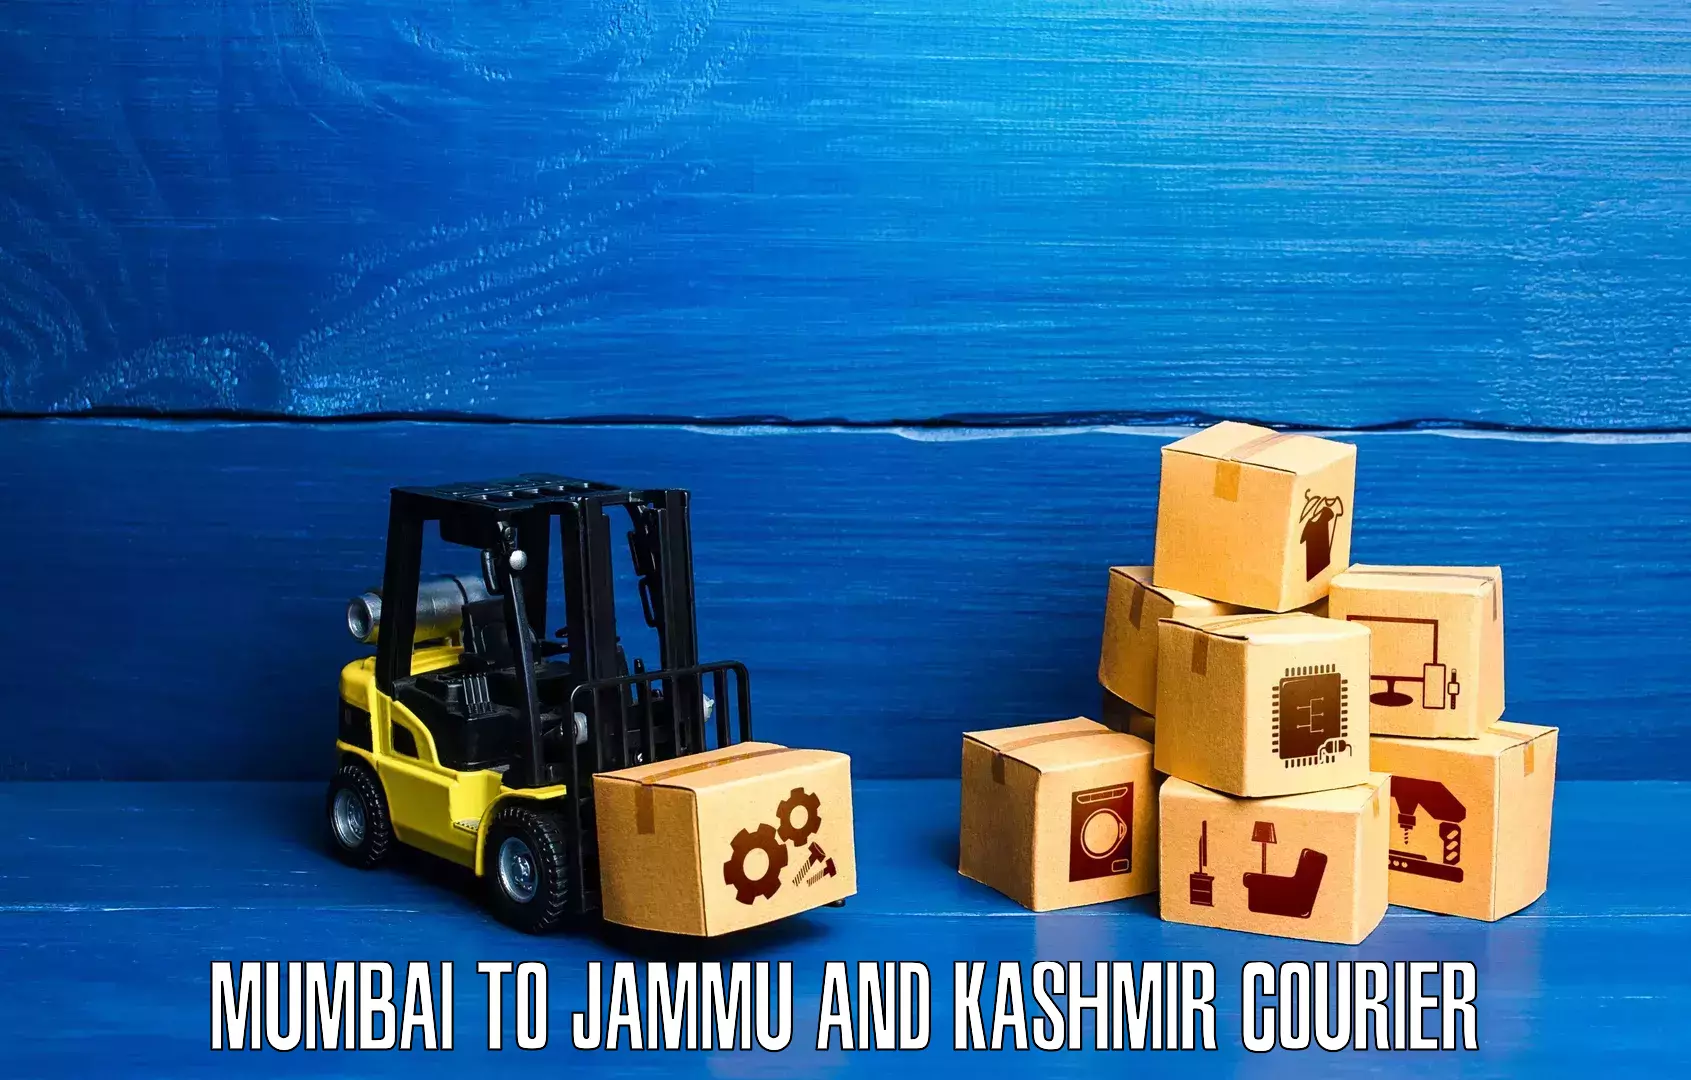 Express logistics Mumbai to Jammu and Kashmir